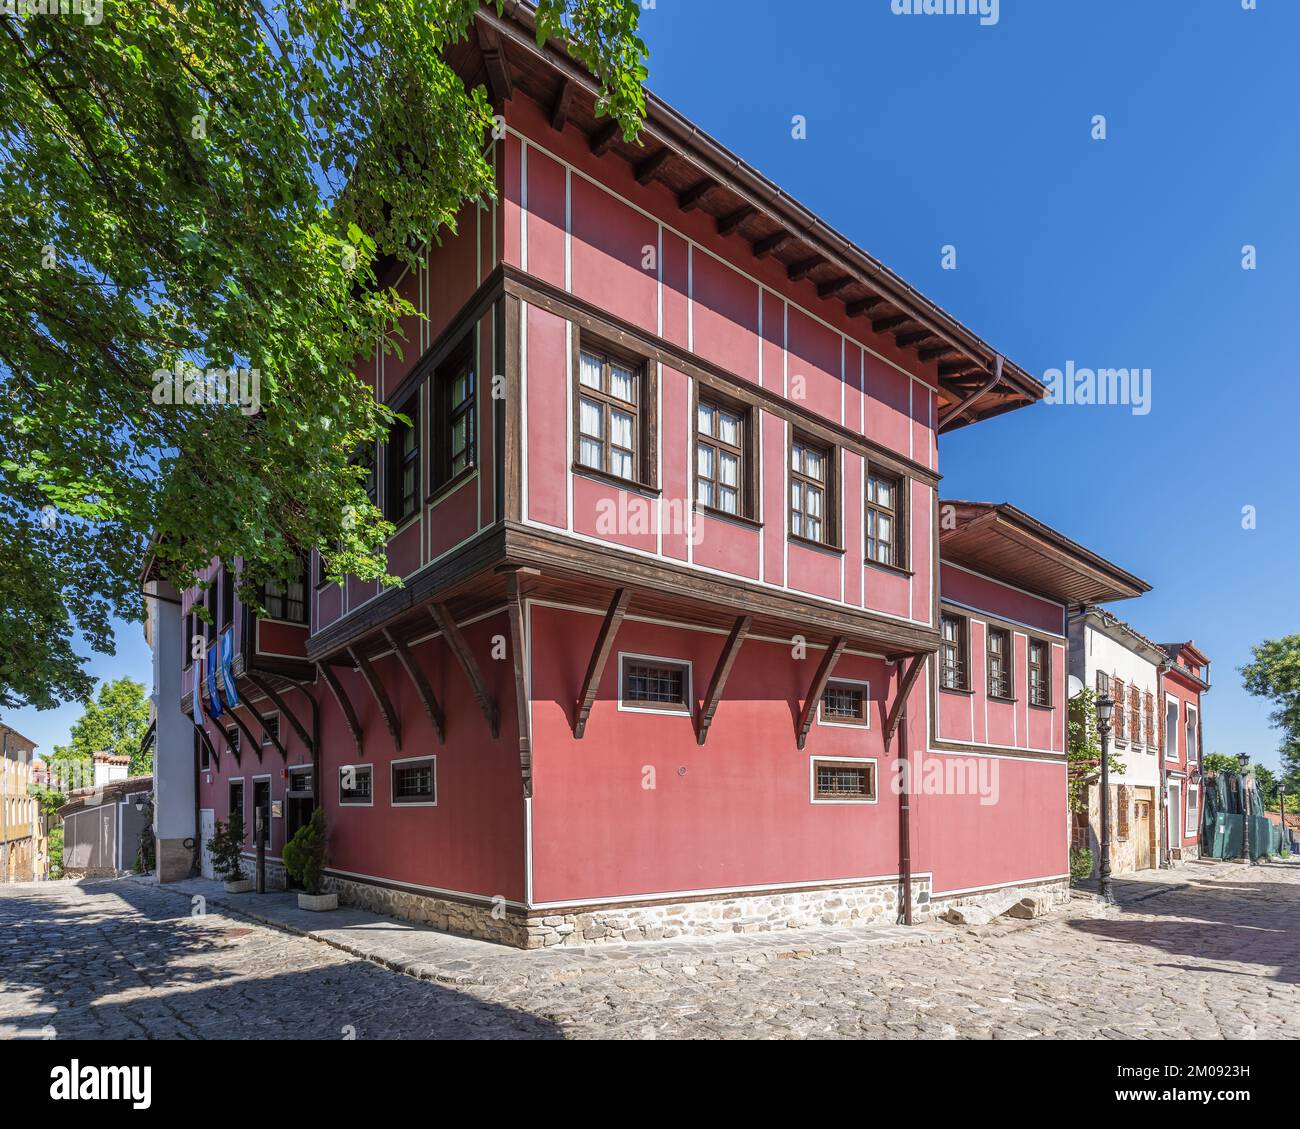 Das Klianti House ist das älteste Gebäude und bietet eine faszinierende Inneneinrichtung und eine einzigartige Architektur eines asymmetrischen zweistöckigen Hauses. Plovdiv, Bulgarien Stockfoto